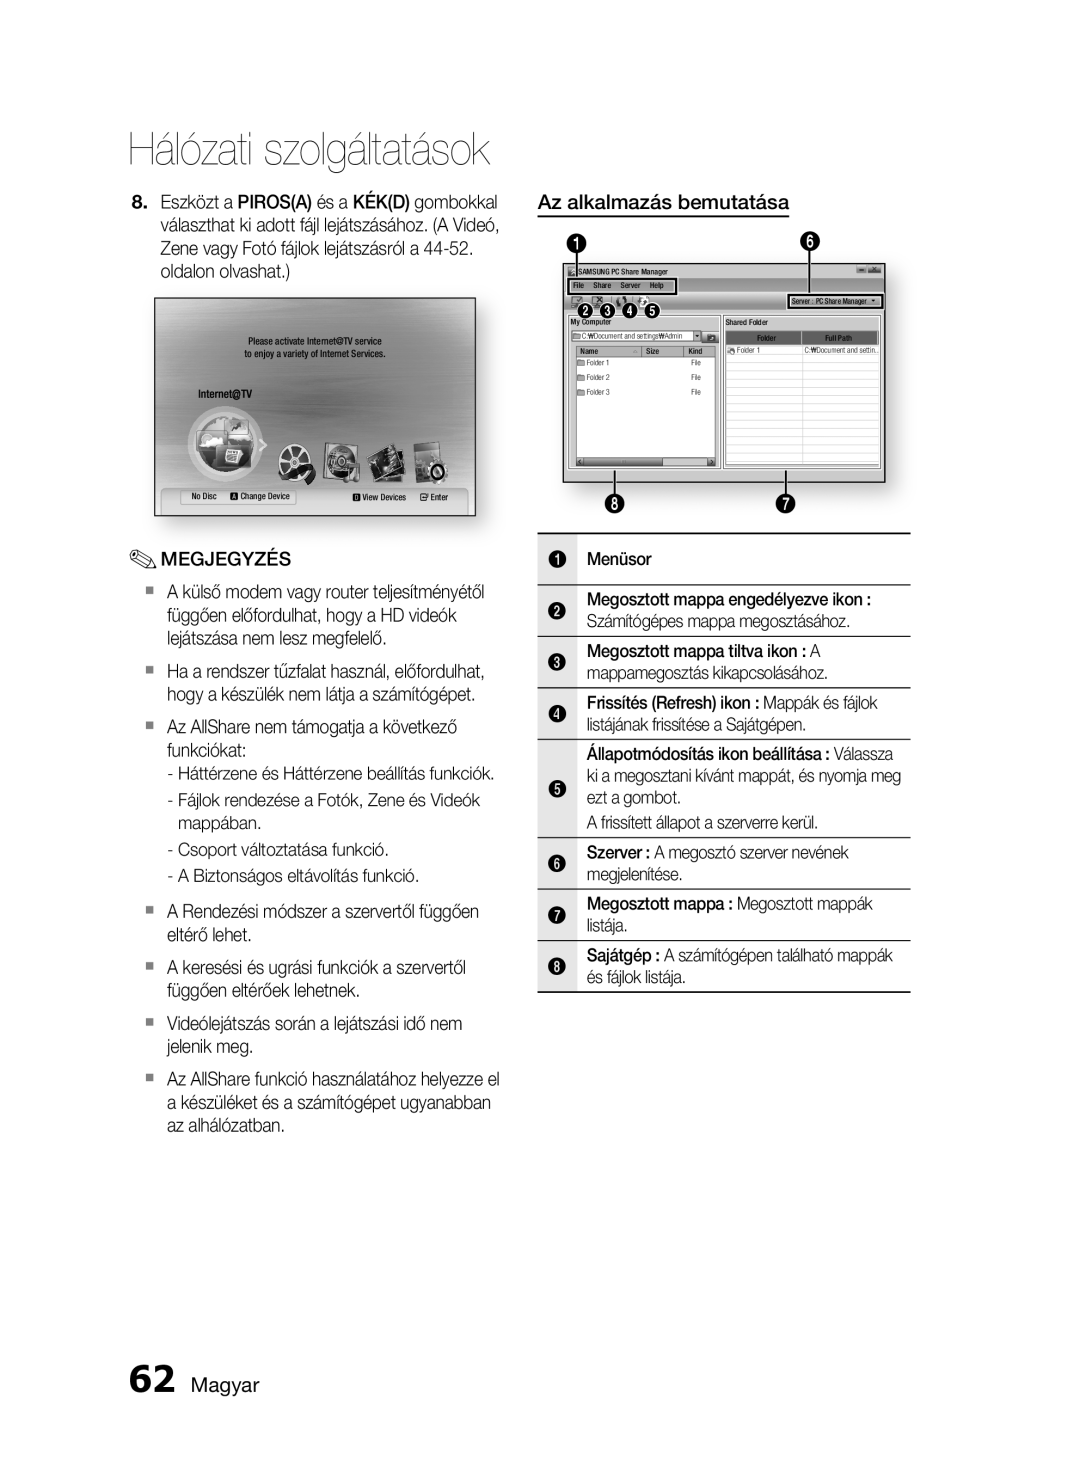 Samsung HT-C5900/XEF, HT-C5900/XEE manual Az alkalmazás bemutatása, Magyar, Hálózati szolgáltatások 